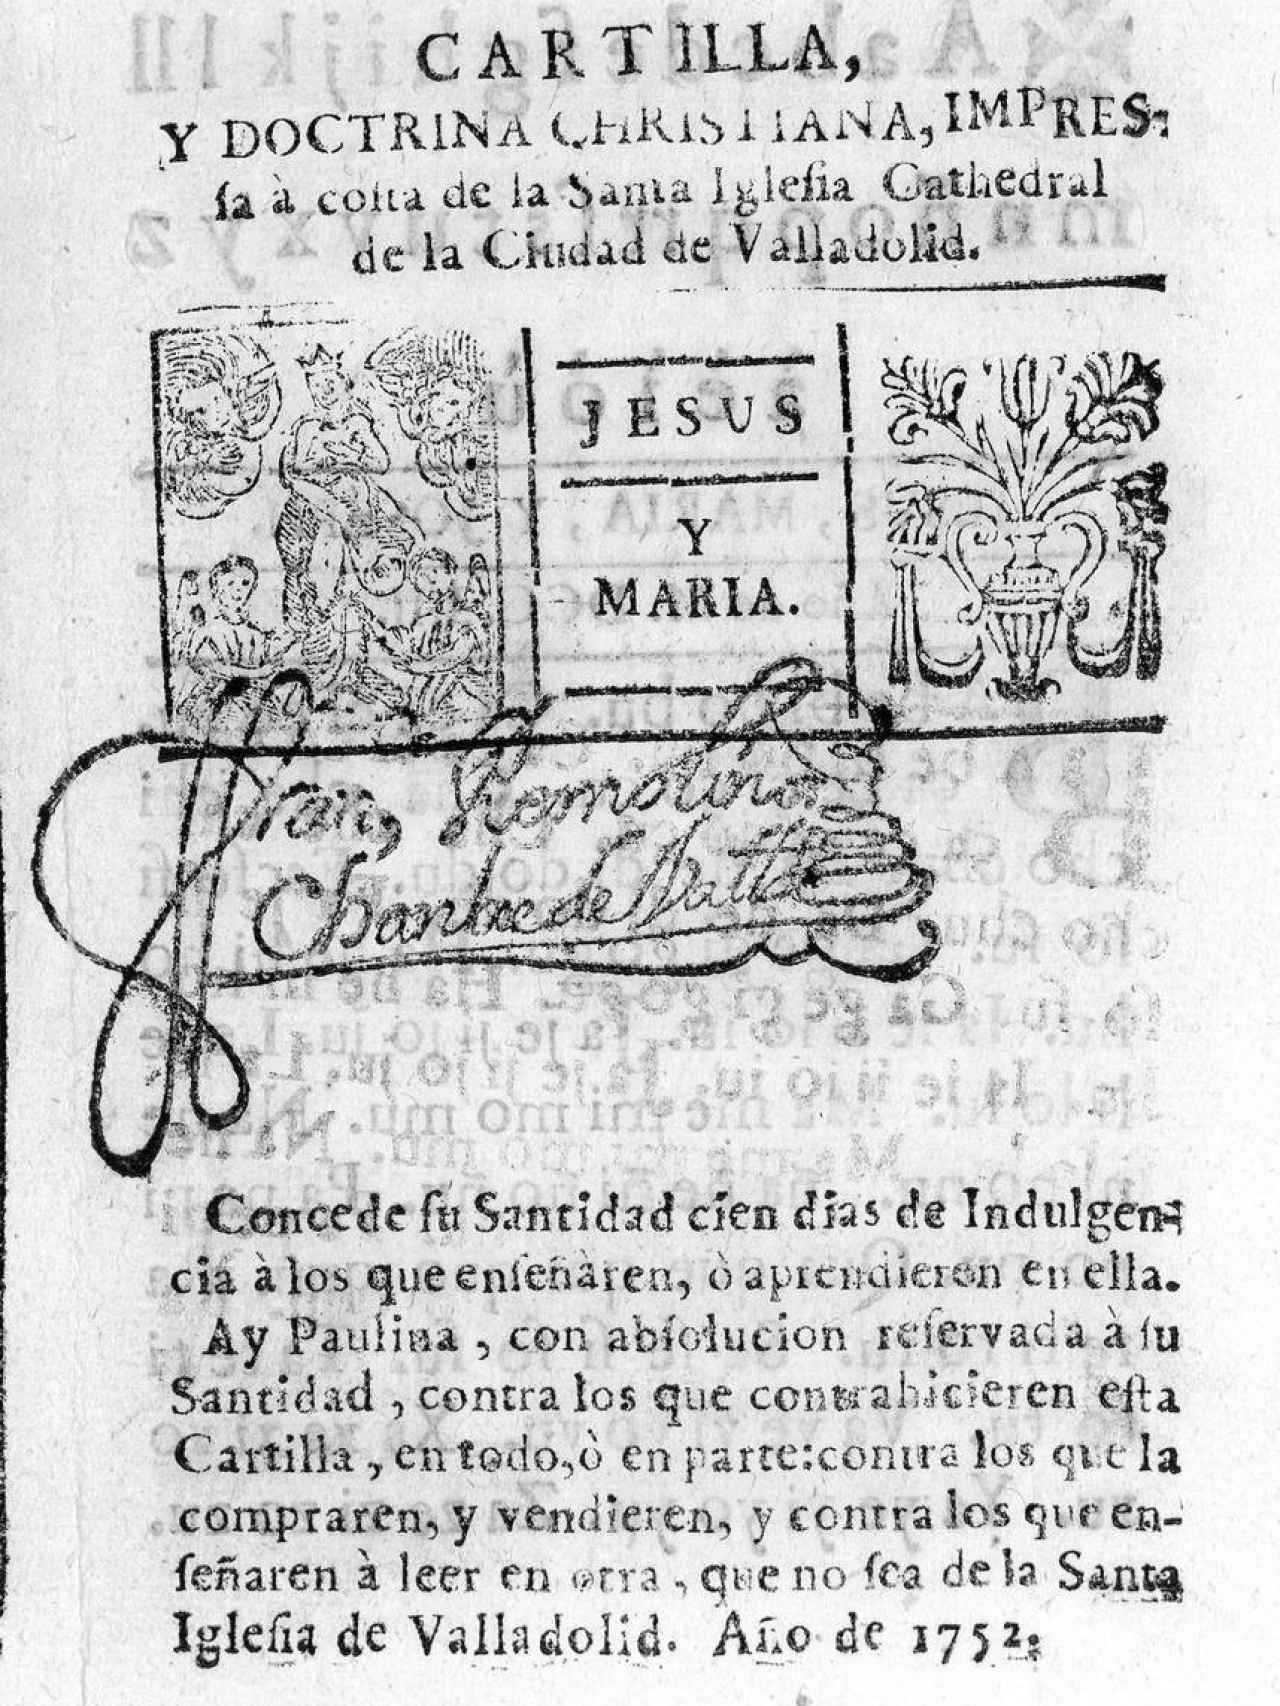 Portada de las cartillas de la doctrina cristiana de la Santa Iglesia de Valladolid.